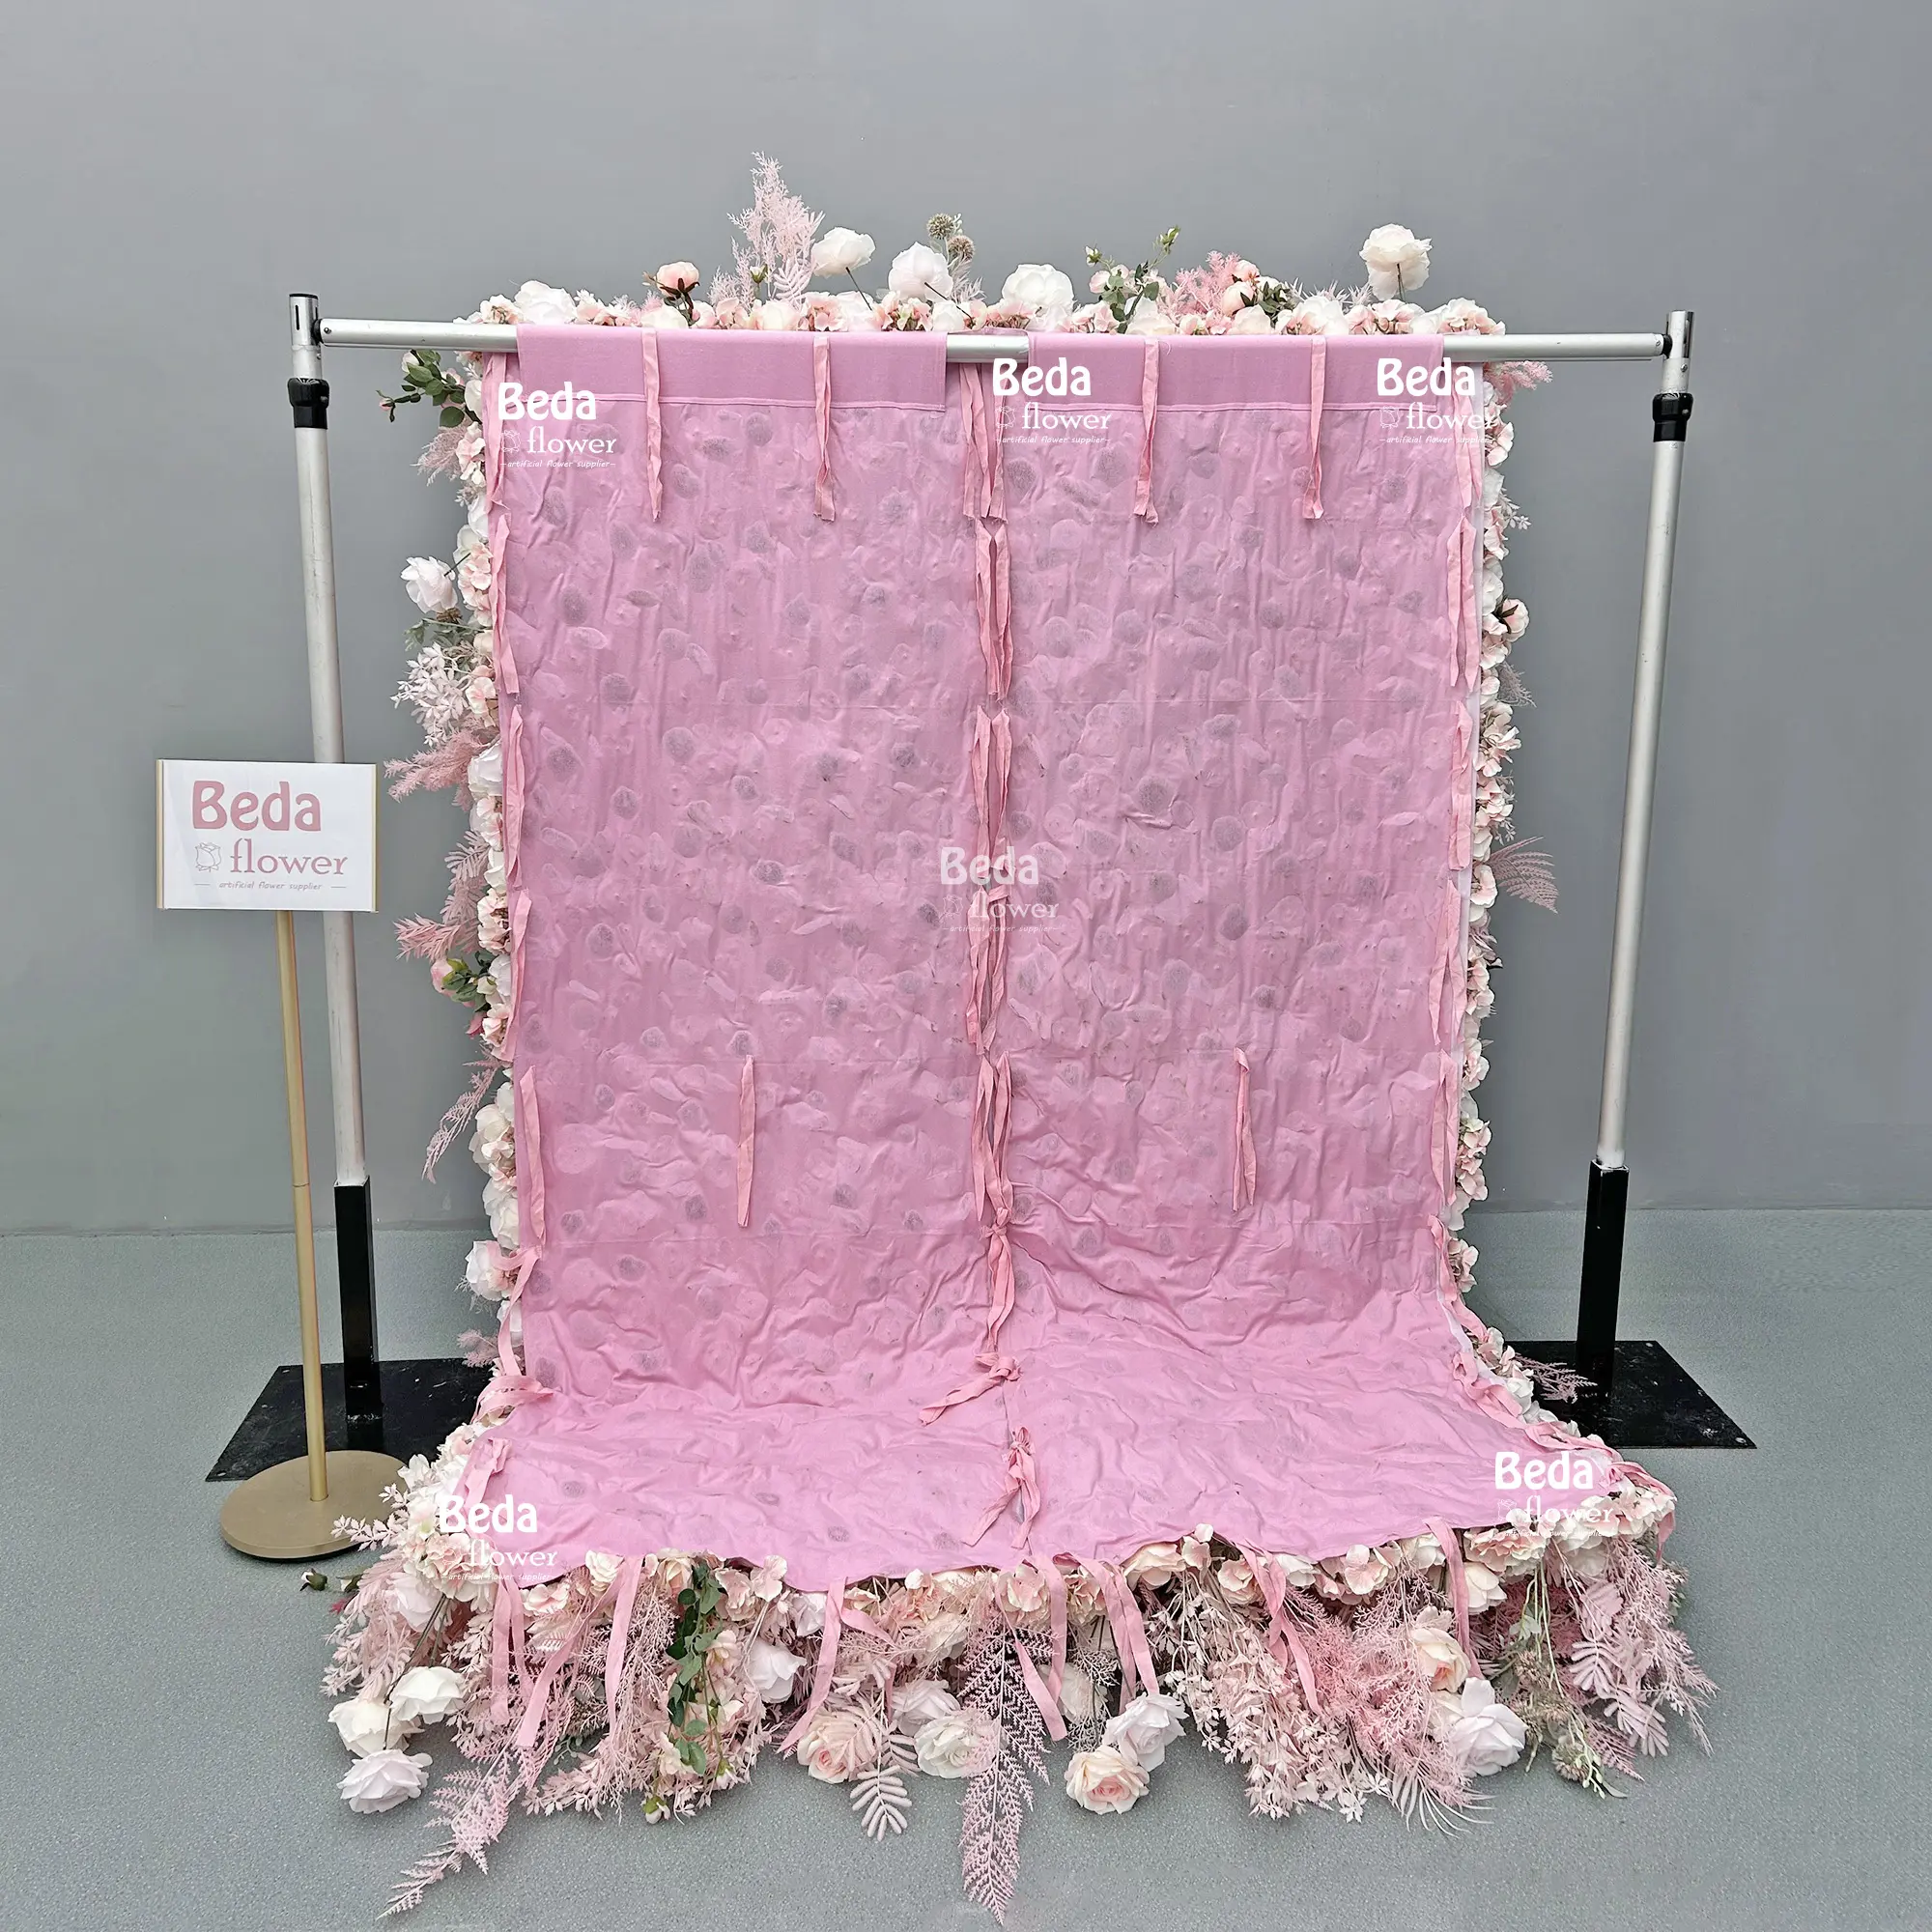 ベダクラシックピンクの花の壁5D人工カスタマイズシルクローズアレンジメント結婚披露宴の背景送料無料装飾